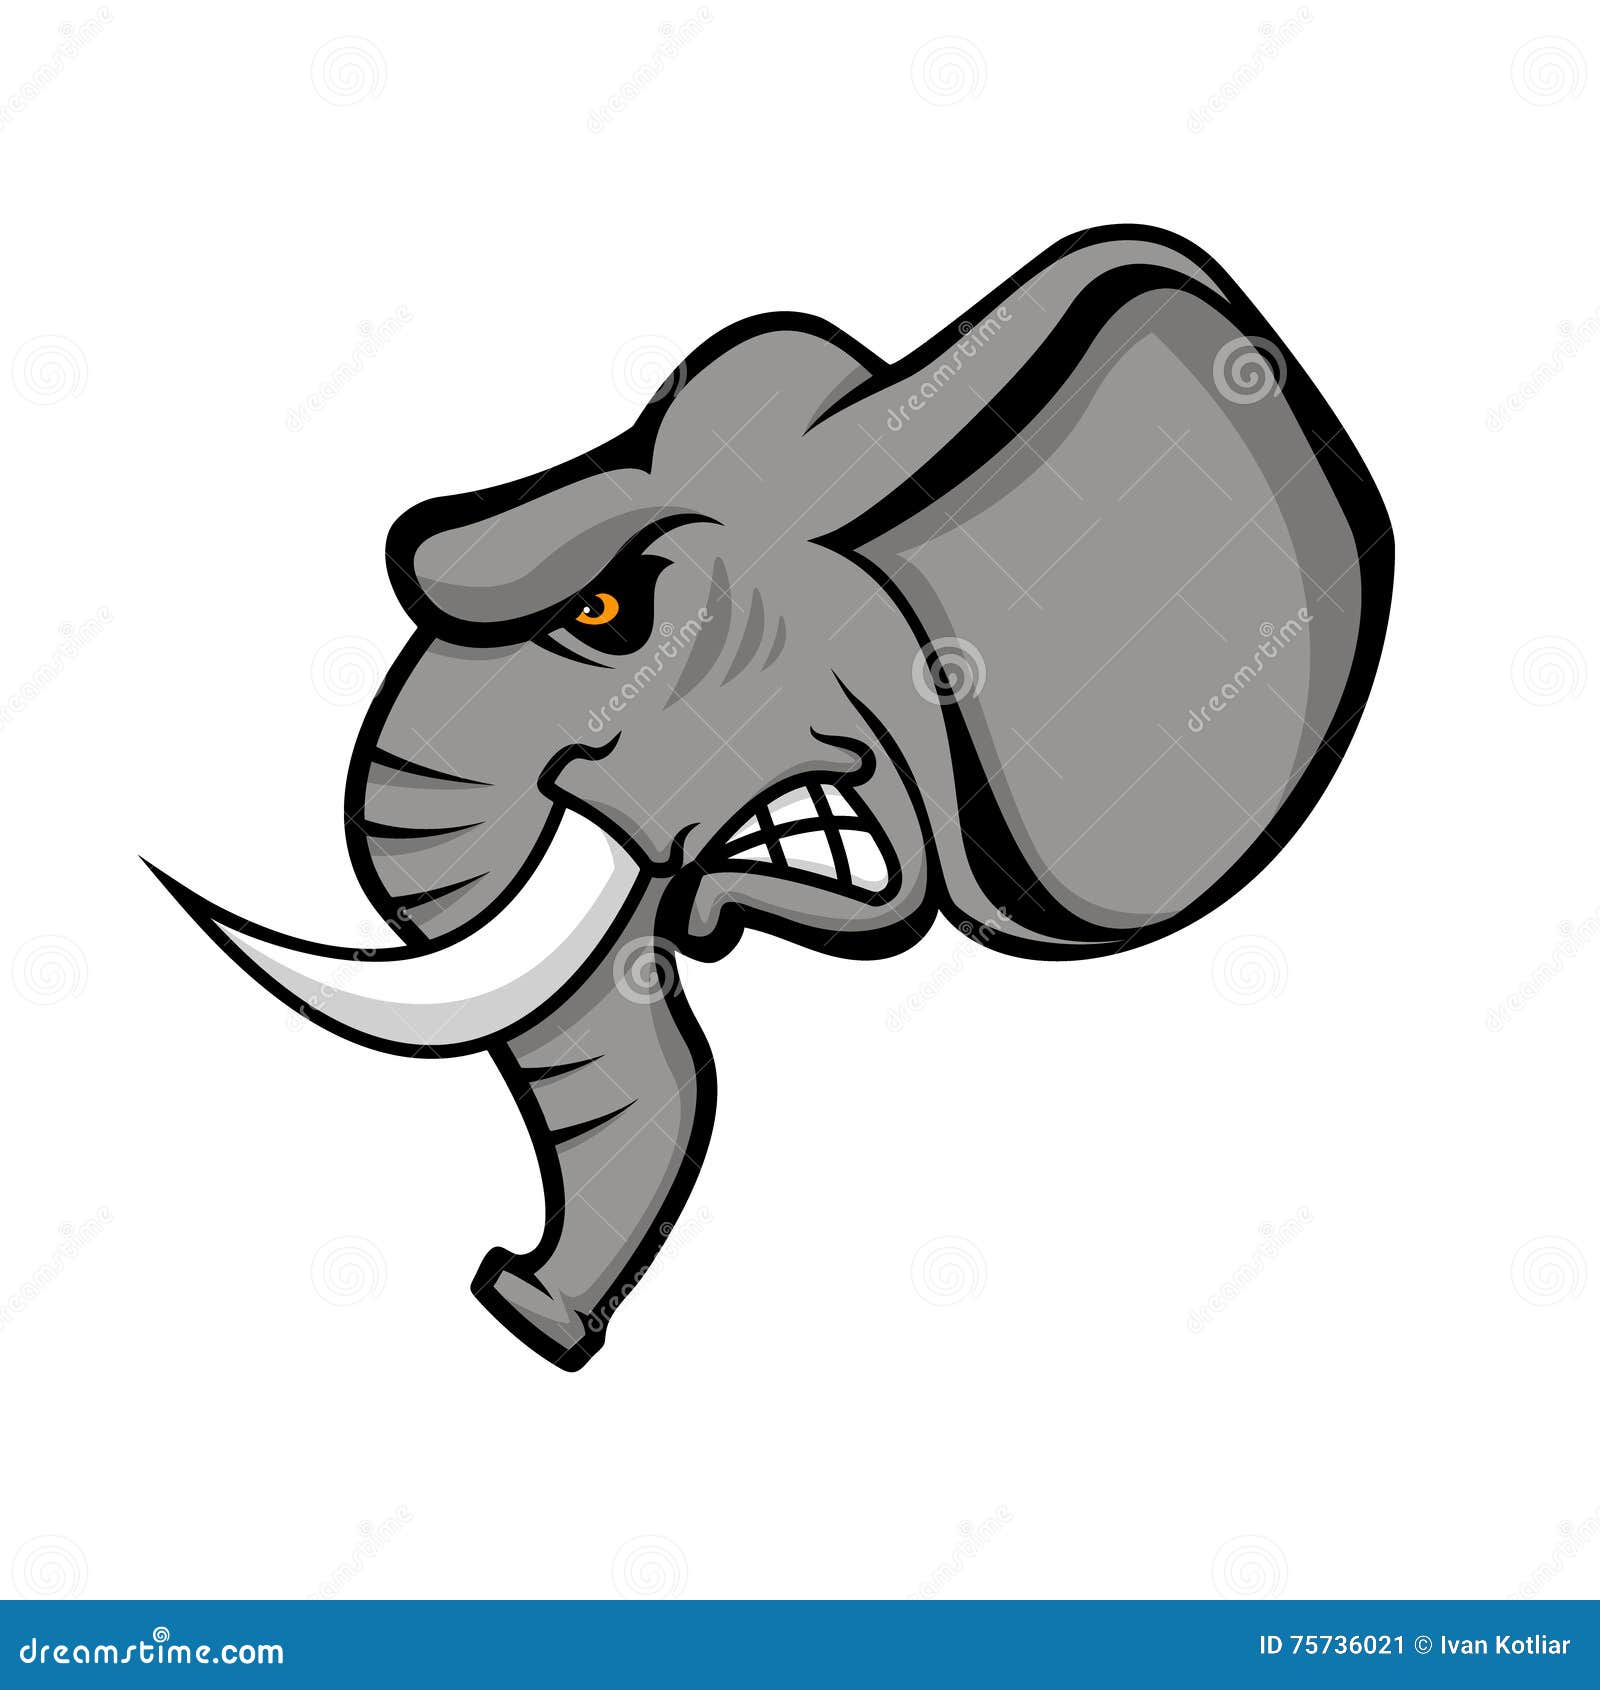 Bakkerij Demonstreer Uitstekend Elephant Head Isolated on White Background. Sport Team or Club E Stock  Vector - Illustration of beast, mammal: 75736021